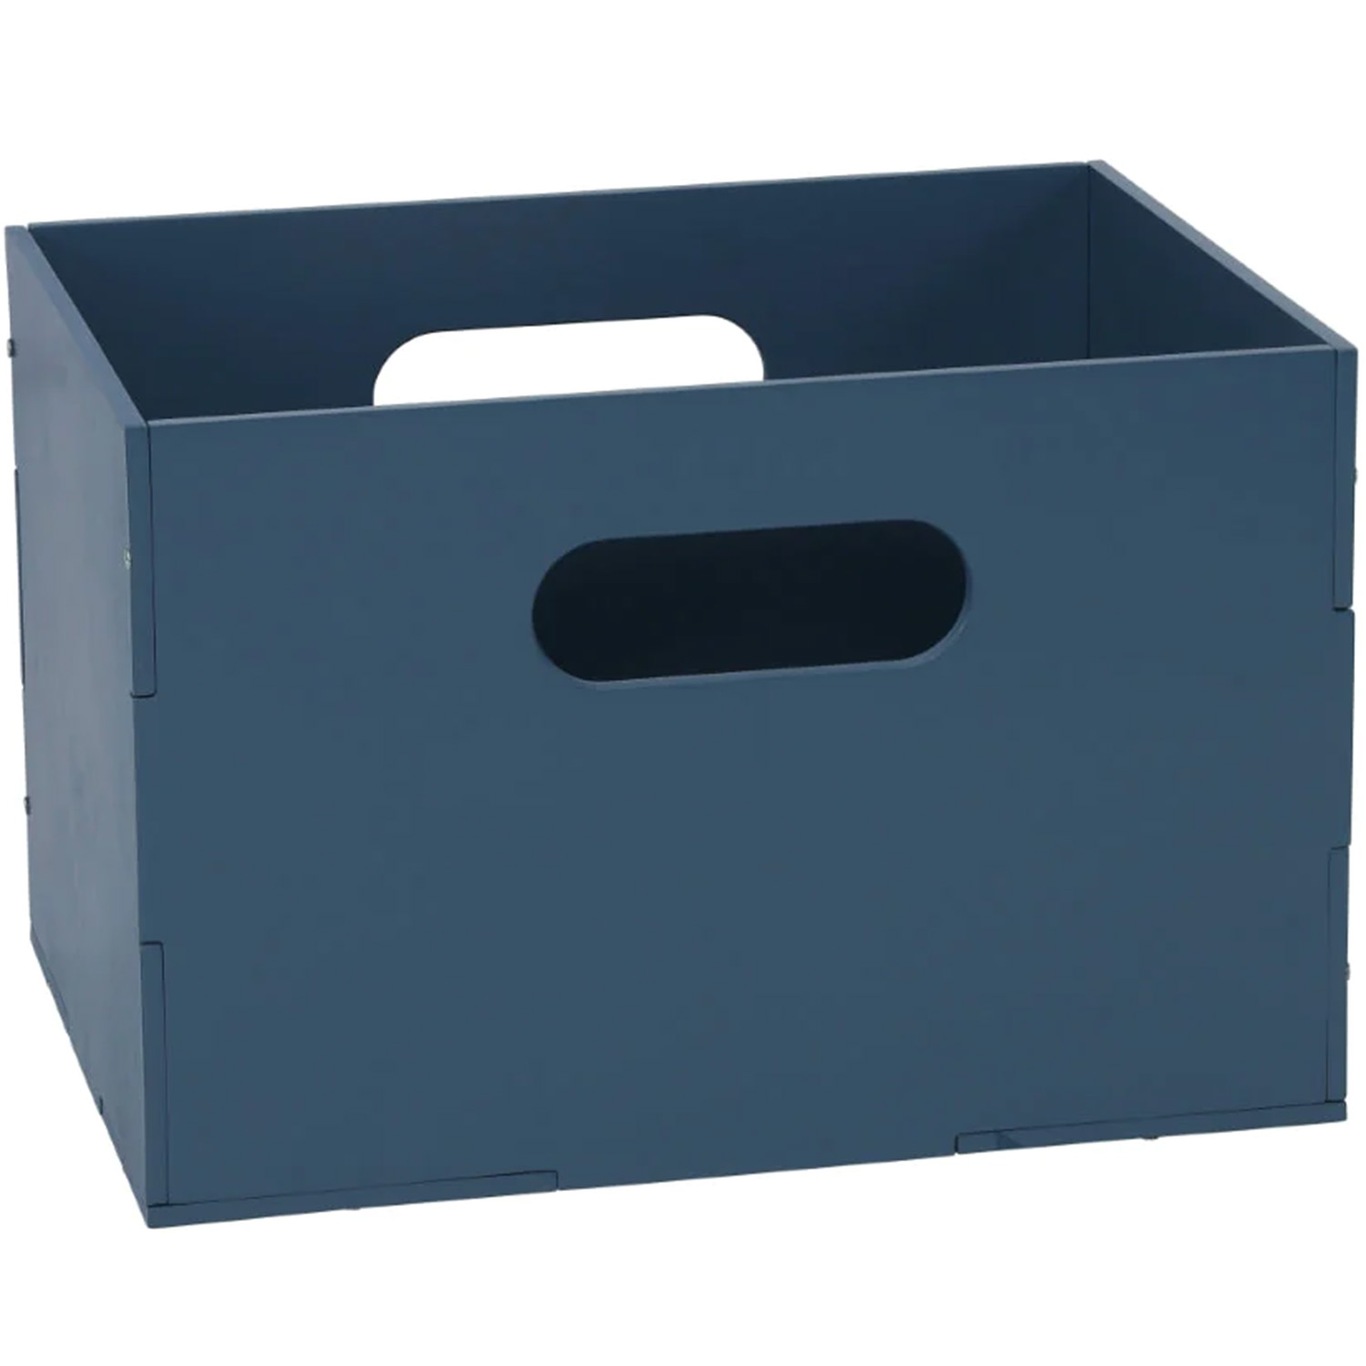 Kiddo Opbevaringskasse 24x33.5 cm, Blå